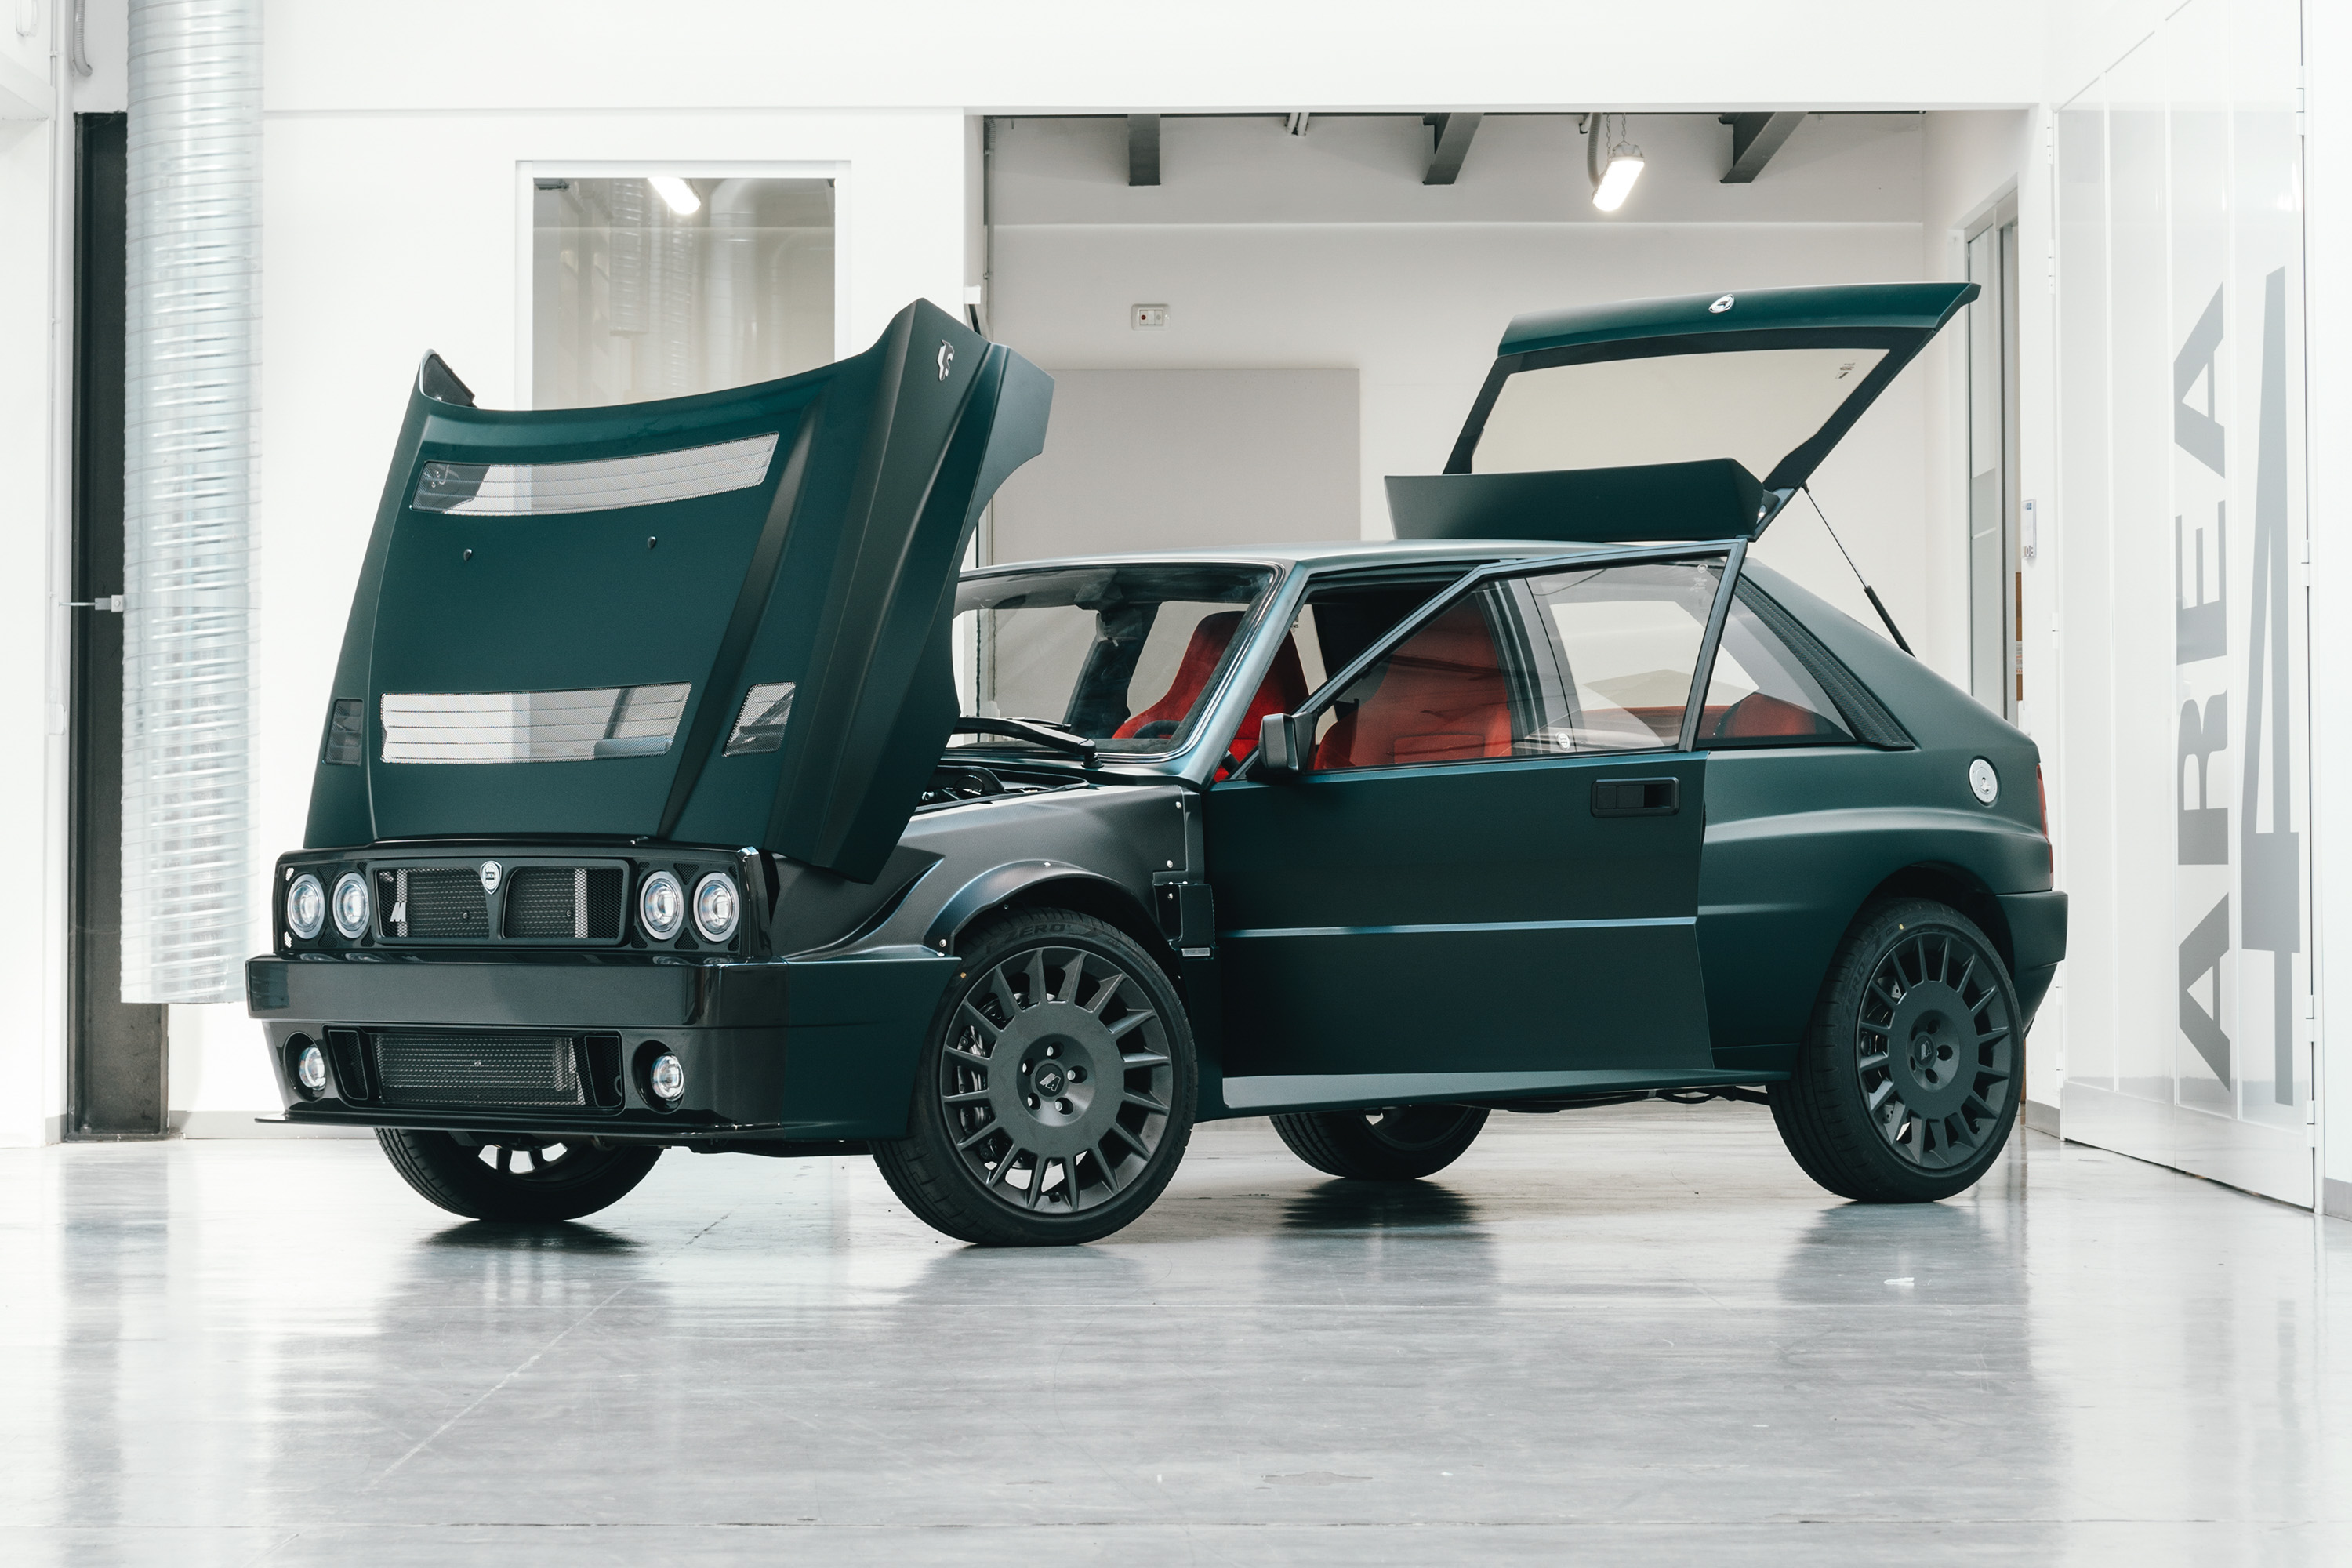 Lancia Delta Futurista  Podium Advanced Technologies